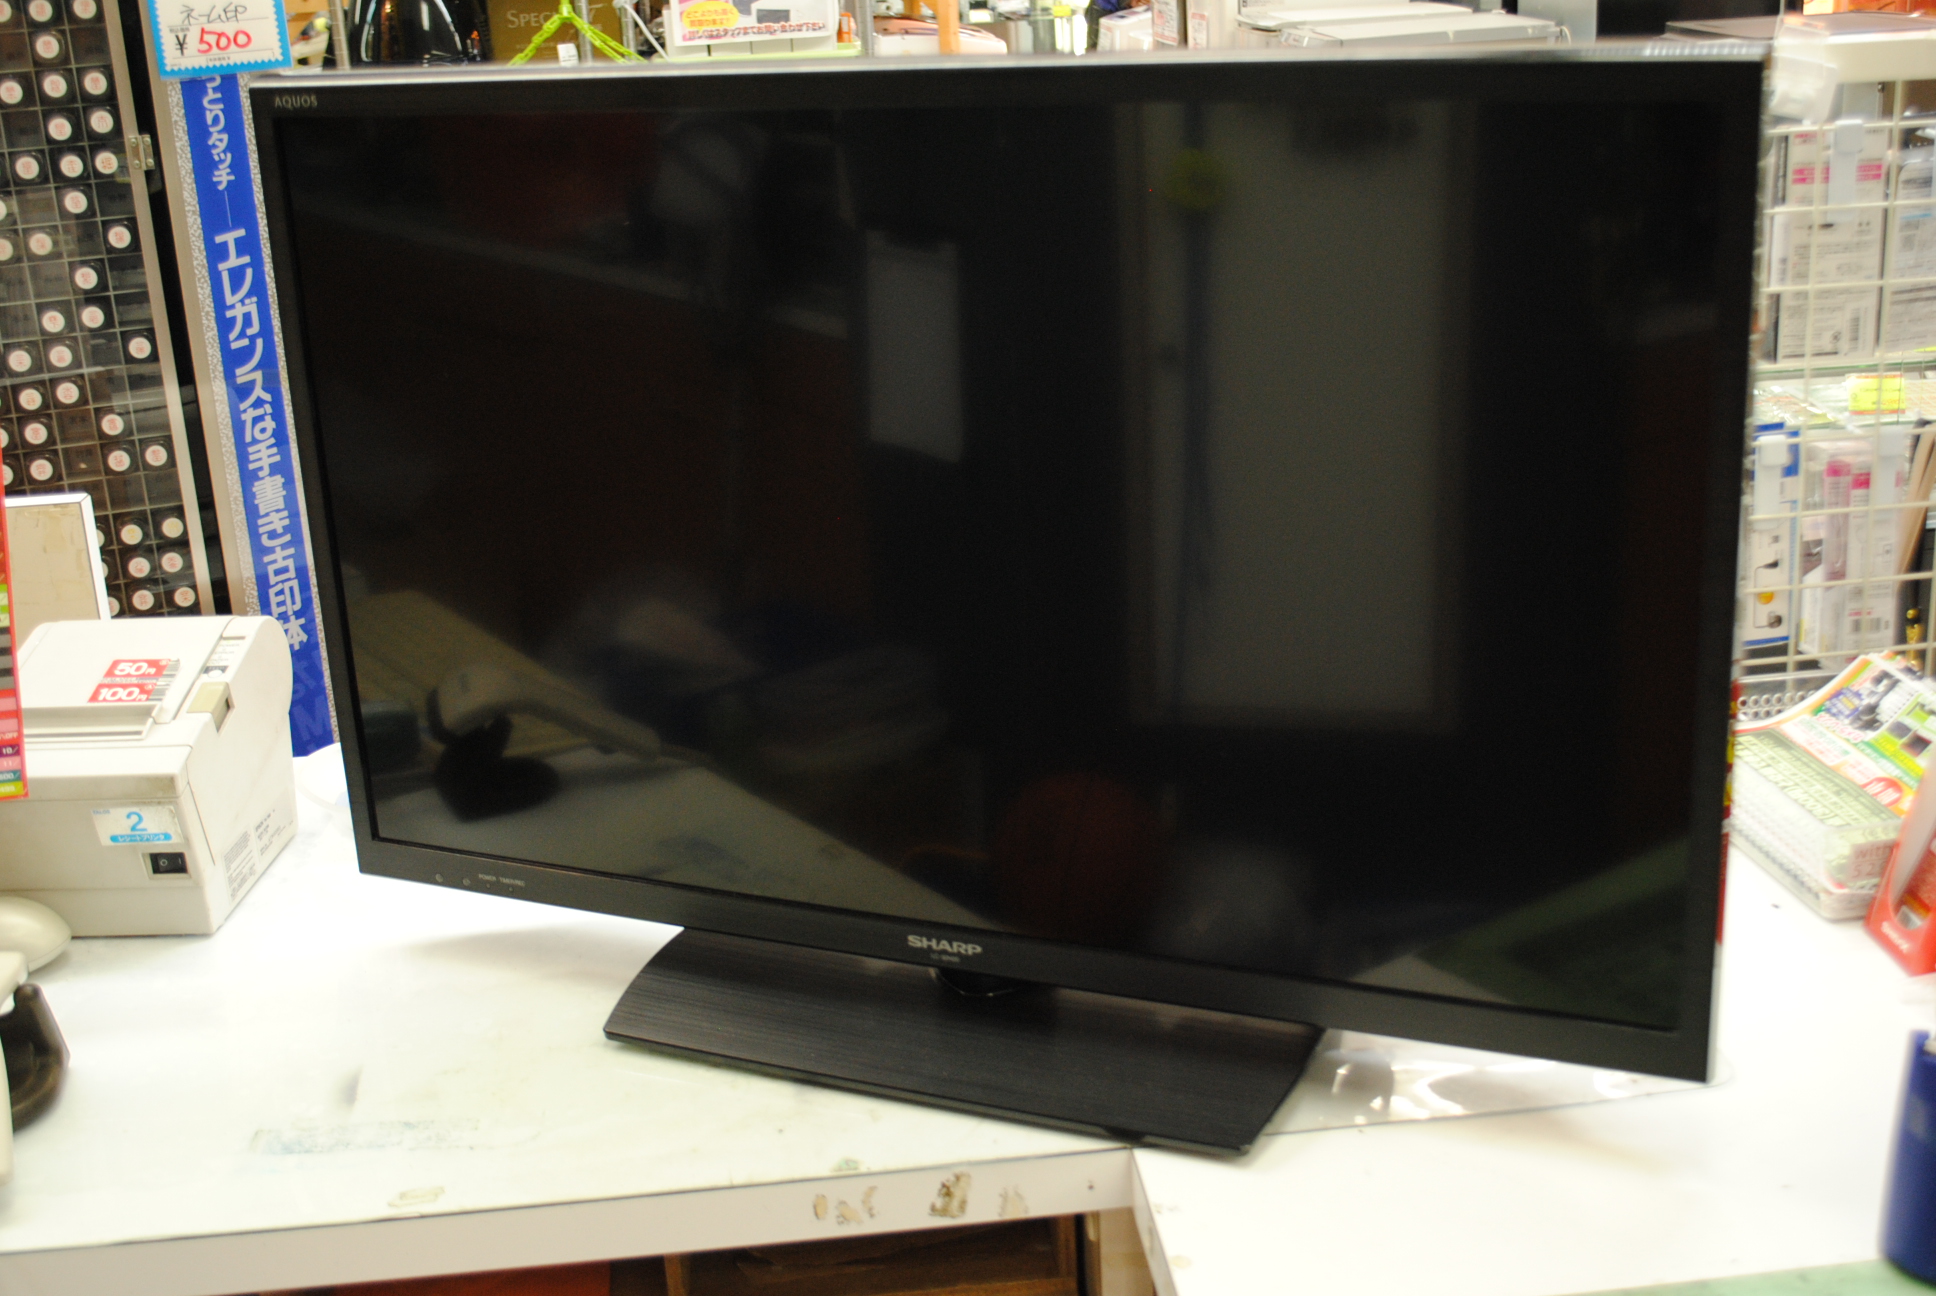 鳥取店|SHARP AQUOS LC-32H20 液晶テレビ32型を買取させて頂きました! 鳥取でテレビ売るなら高価買取のジャム鳥取店へお任せ